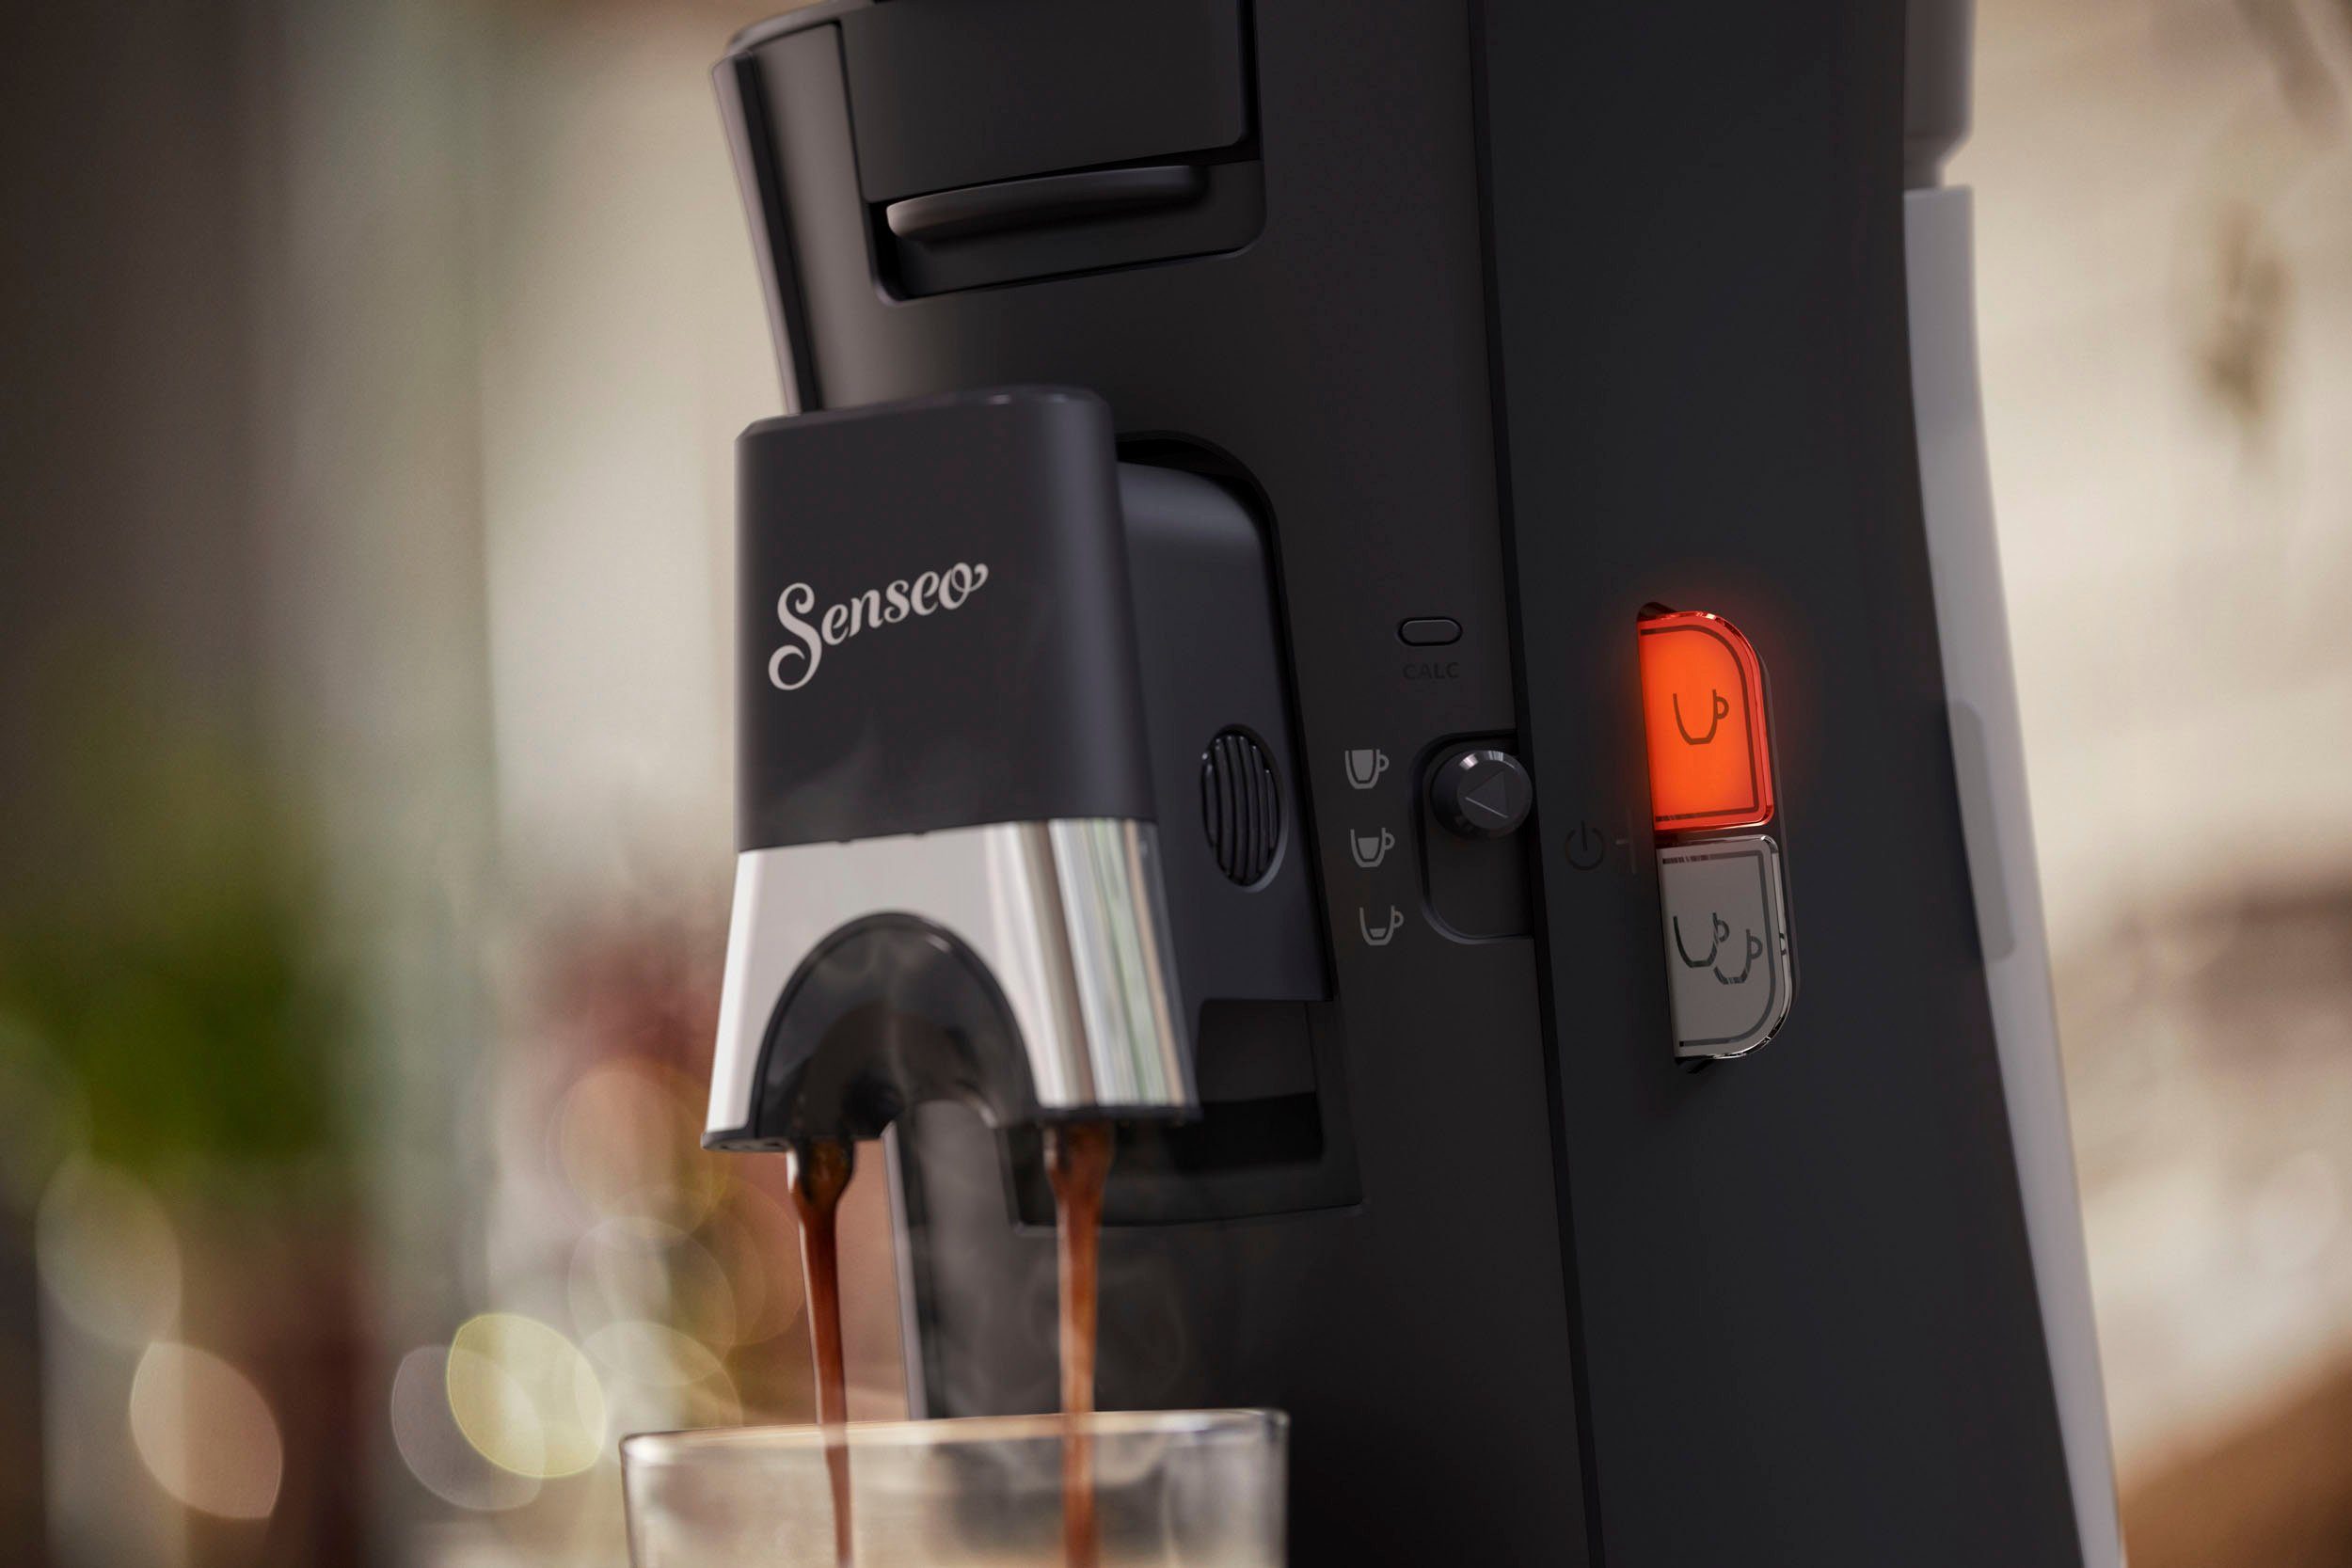 Senseo aus Philips Select und Senseo Plastik, € und recyceltem bis 100 Kaffeespezialitäten, max.33 kaufen Plus, 21% zurückerhalten Crema CSA230/69, Pads Kaffeepadmaschine +3